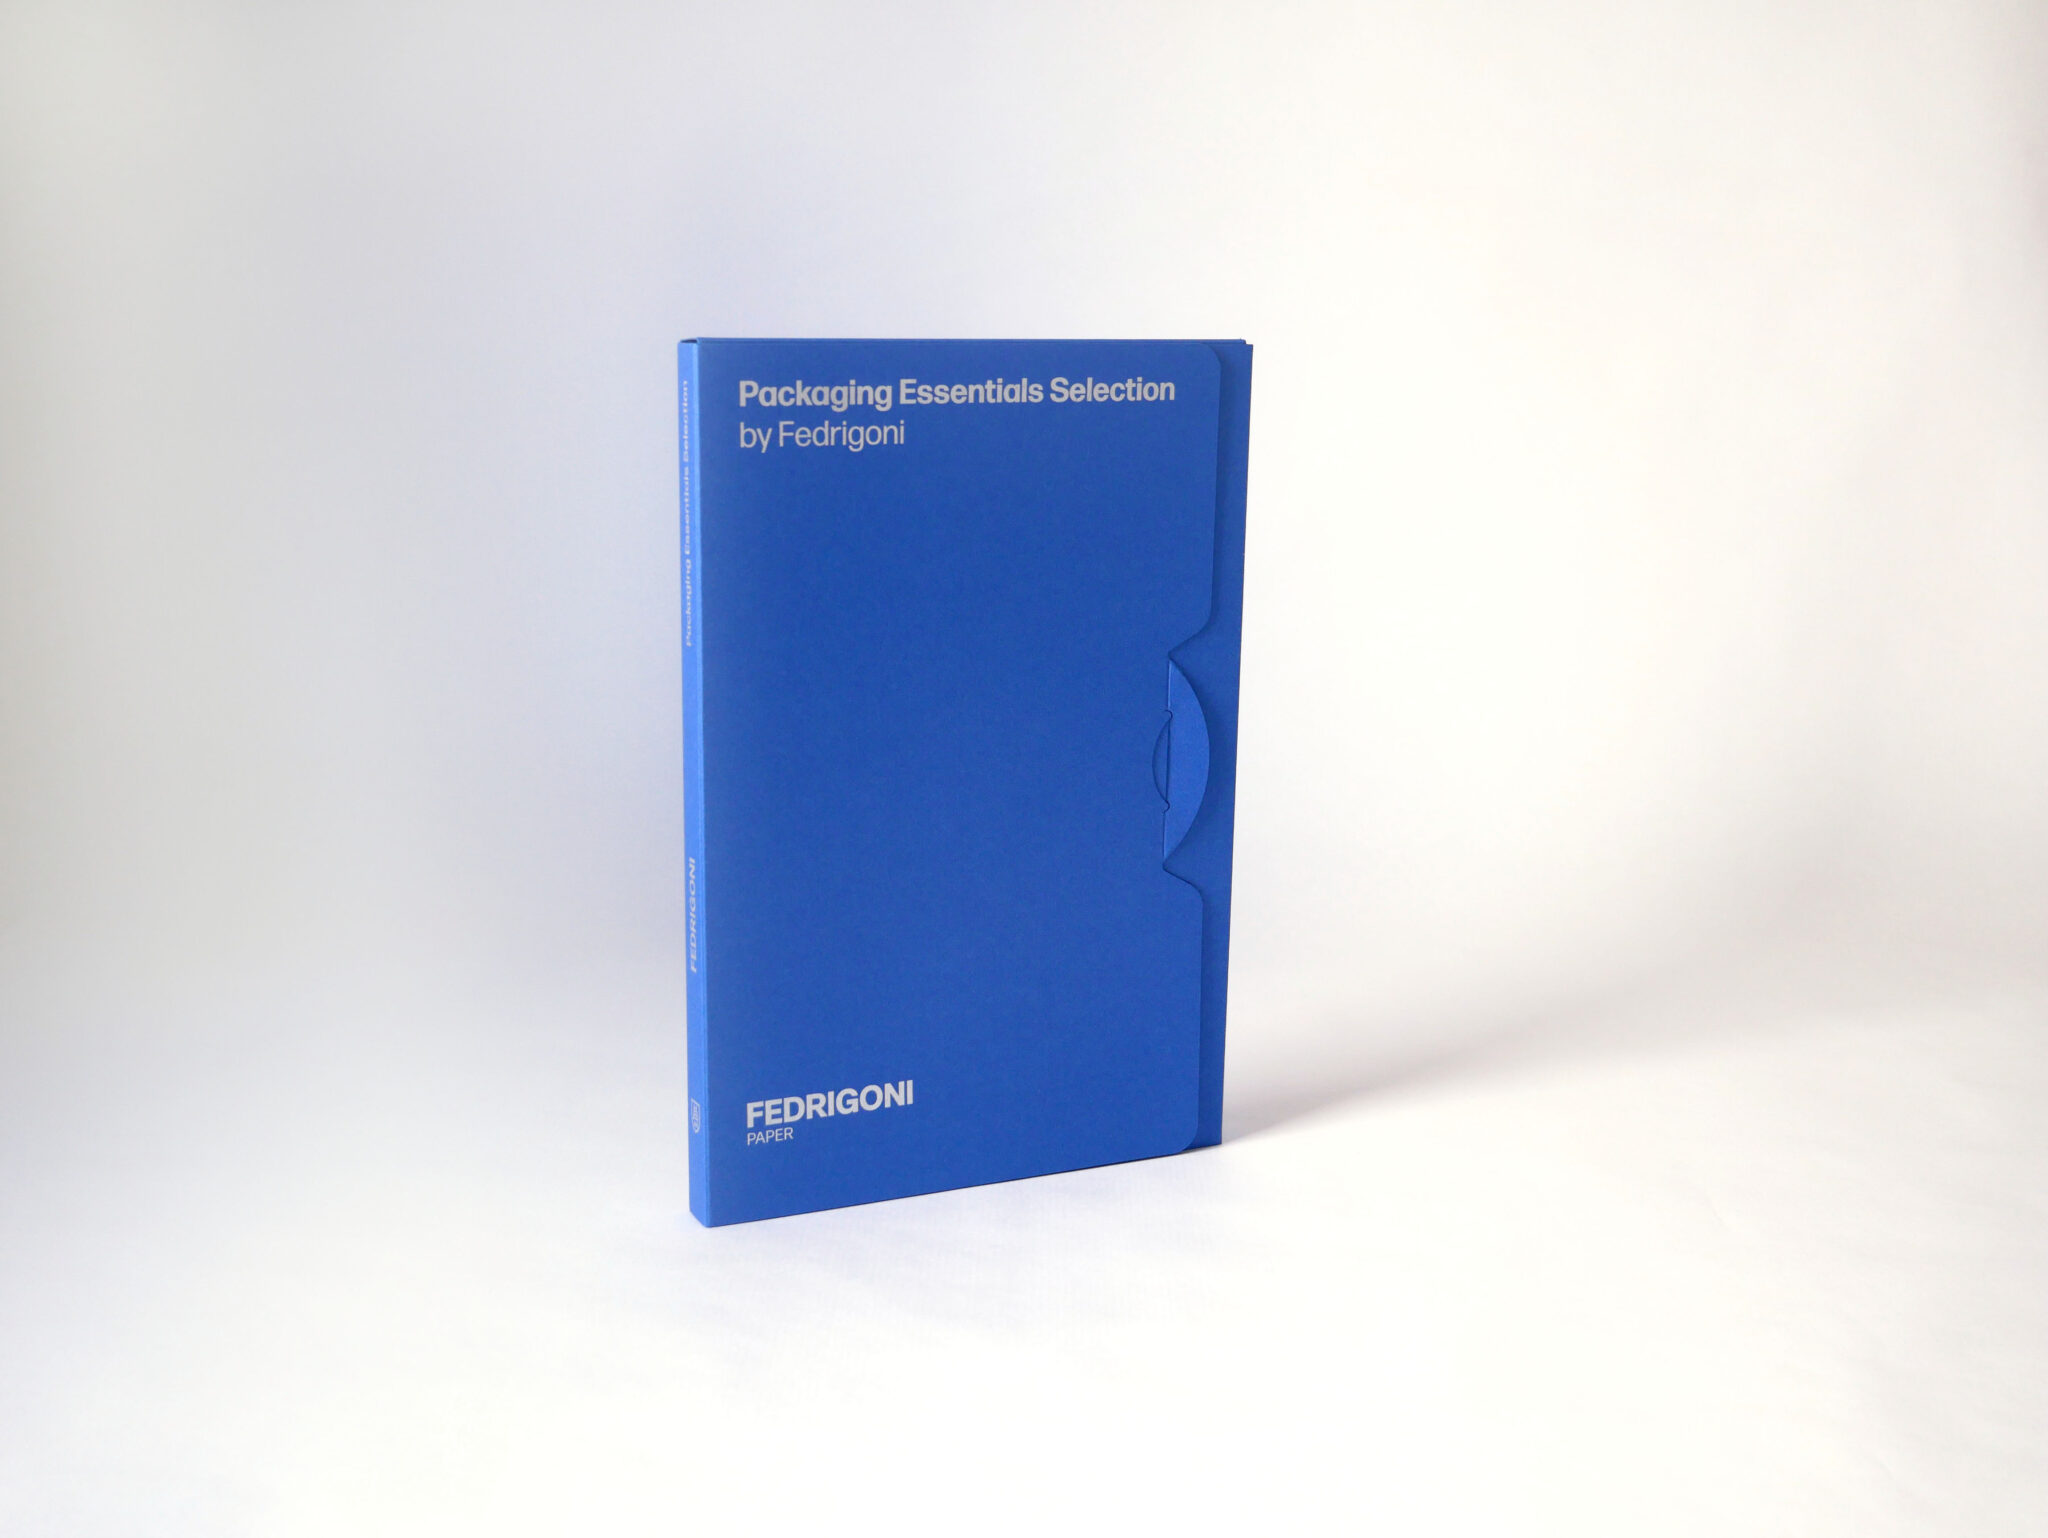 Novo catálogo Packaging Essentials Selection by Fedrigoni